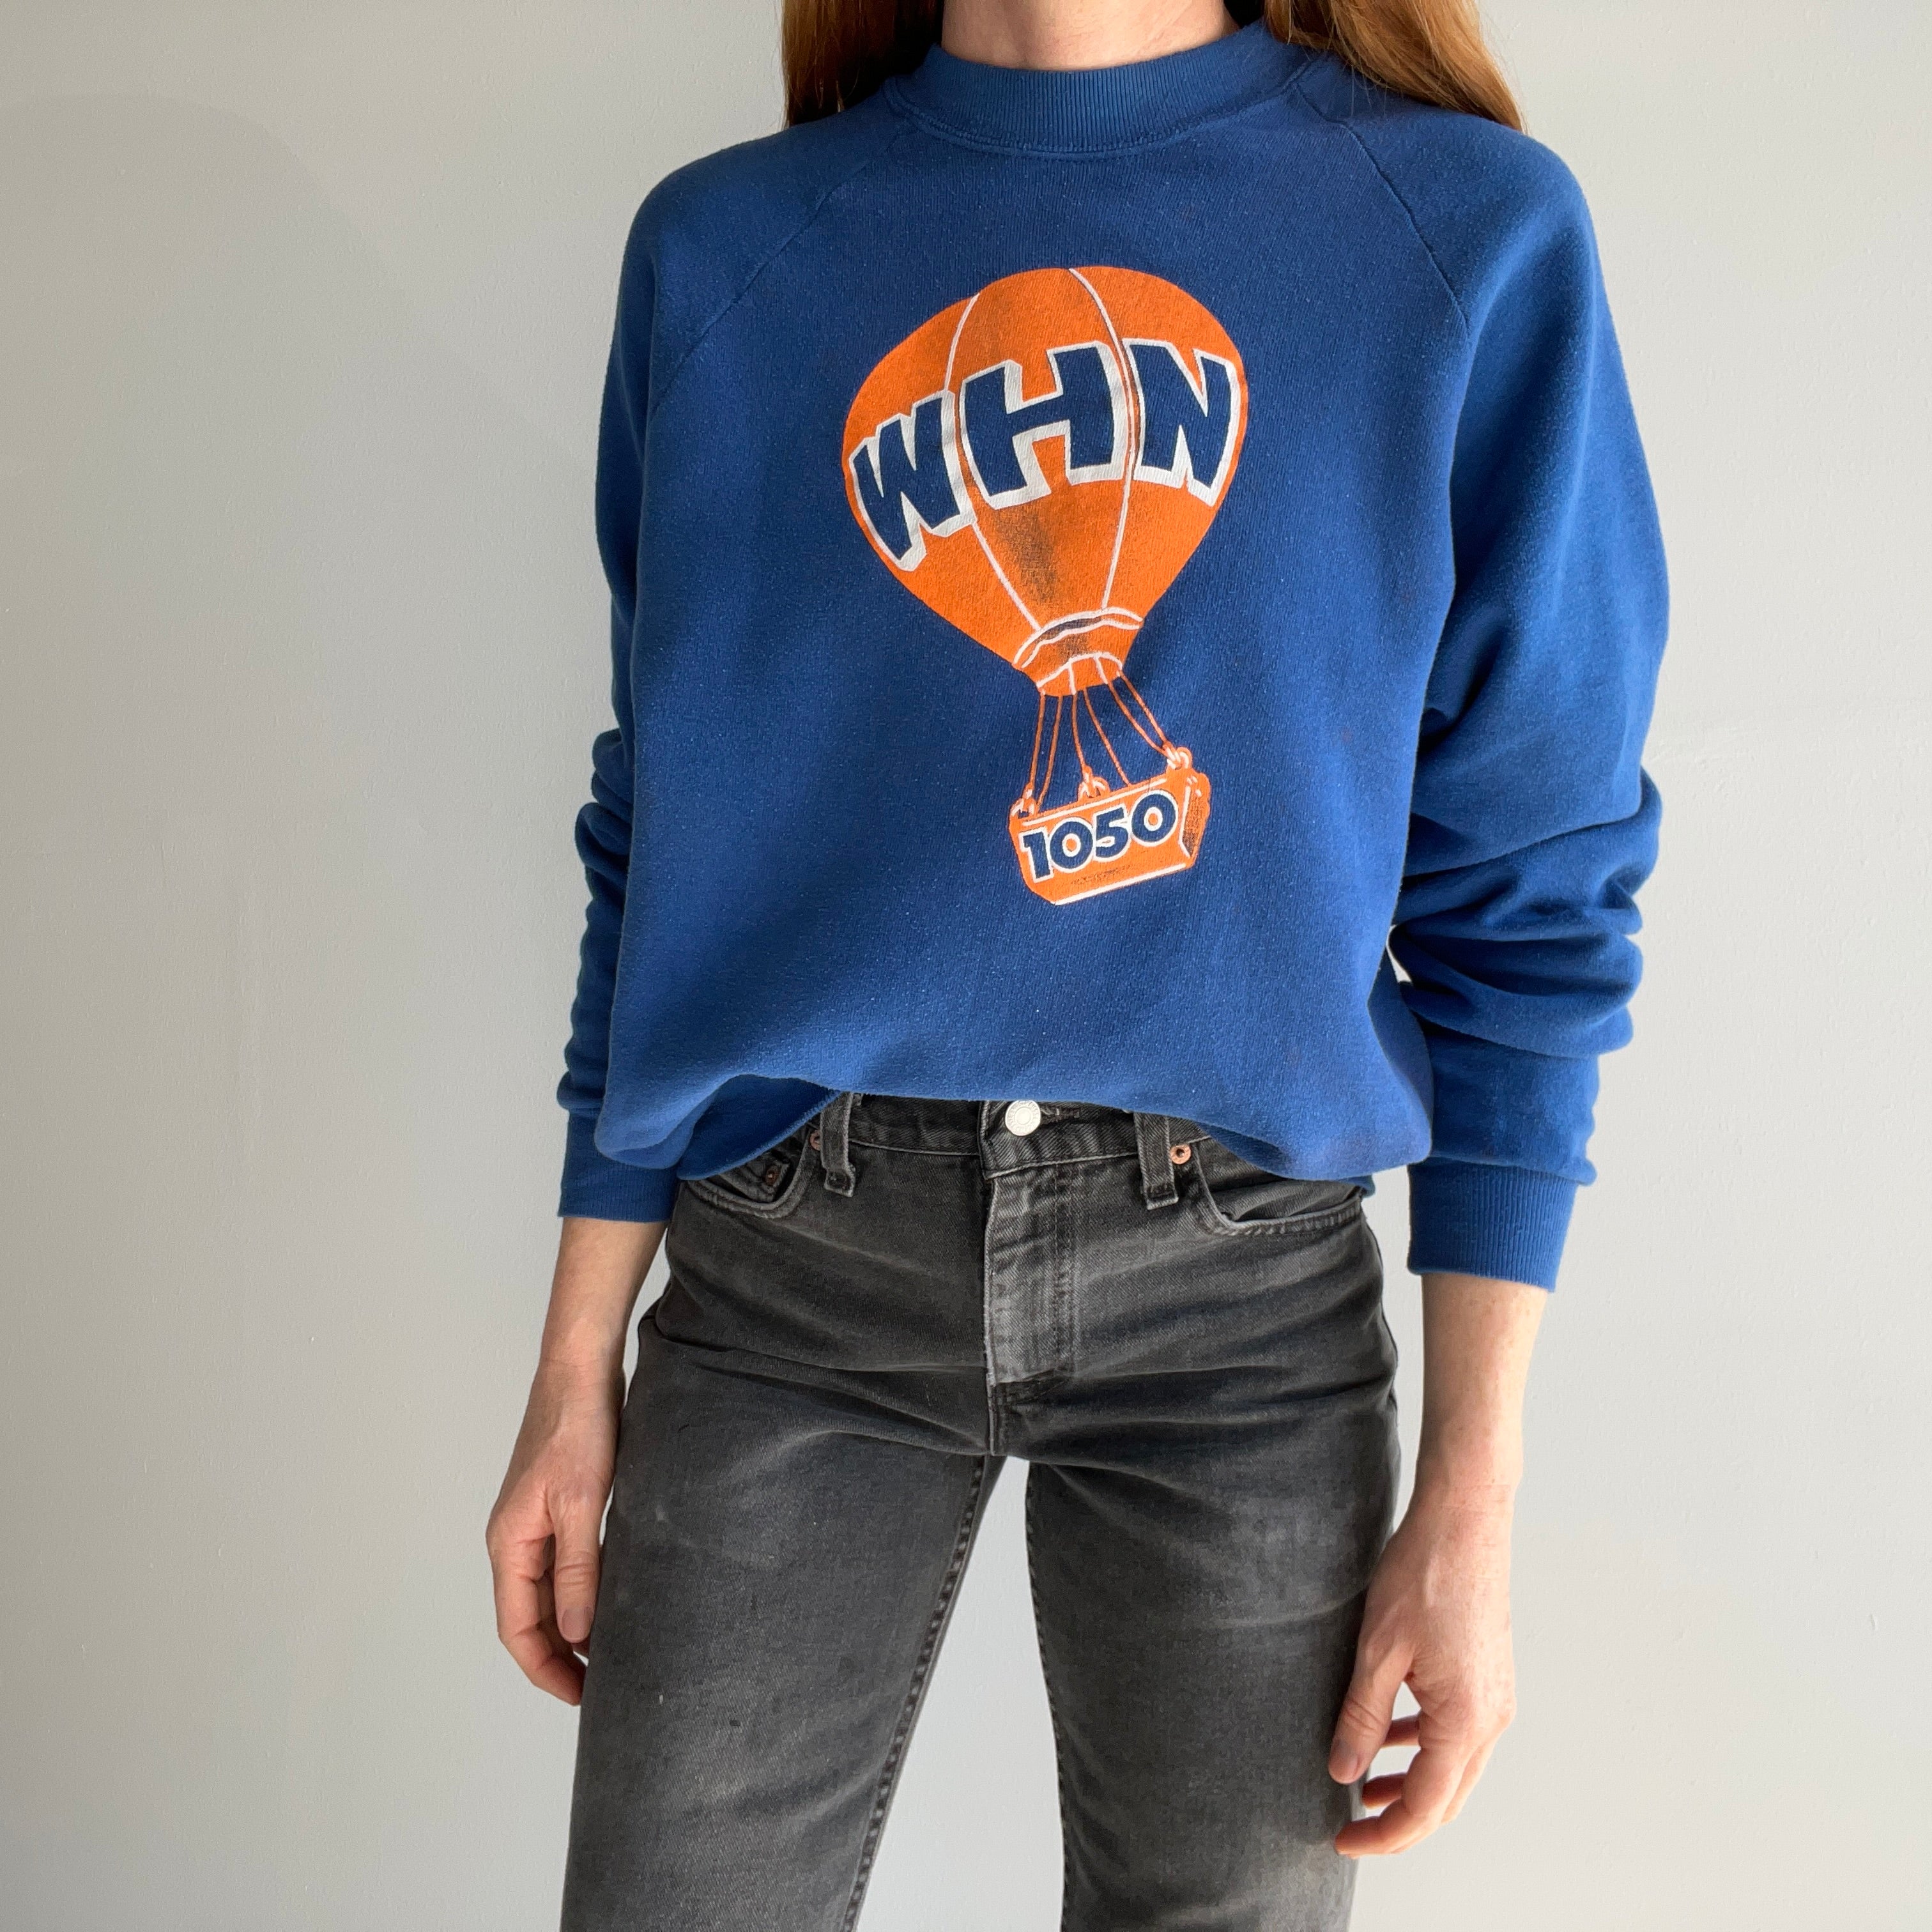 1980s WHN AM 1050 Sweatshirt _ NYC